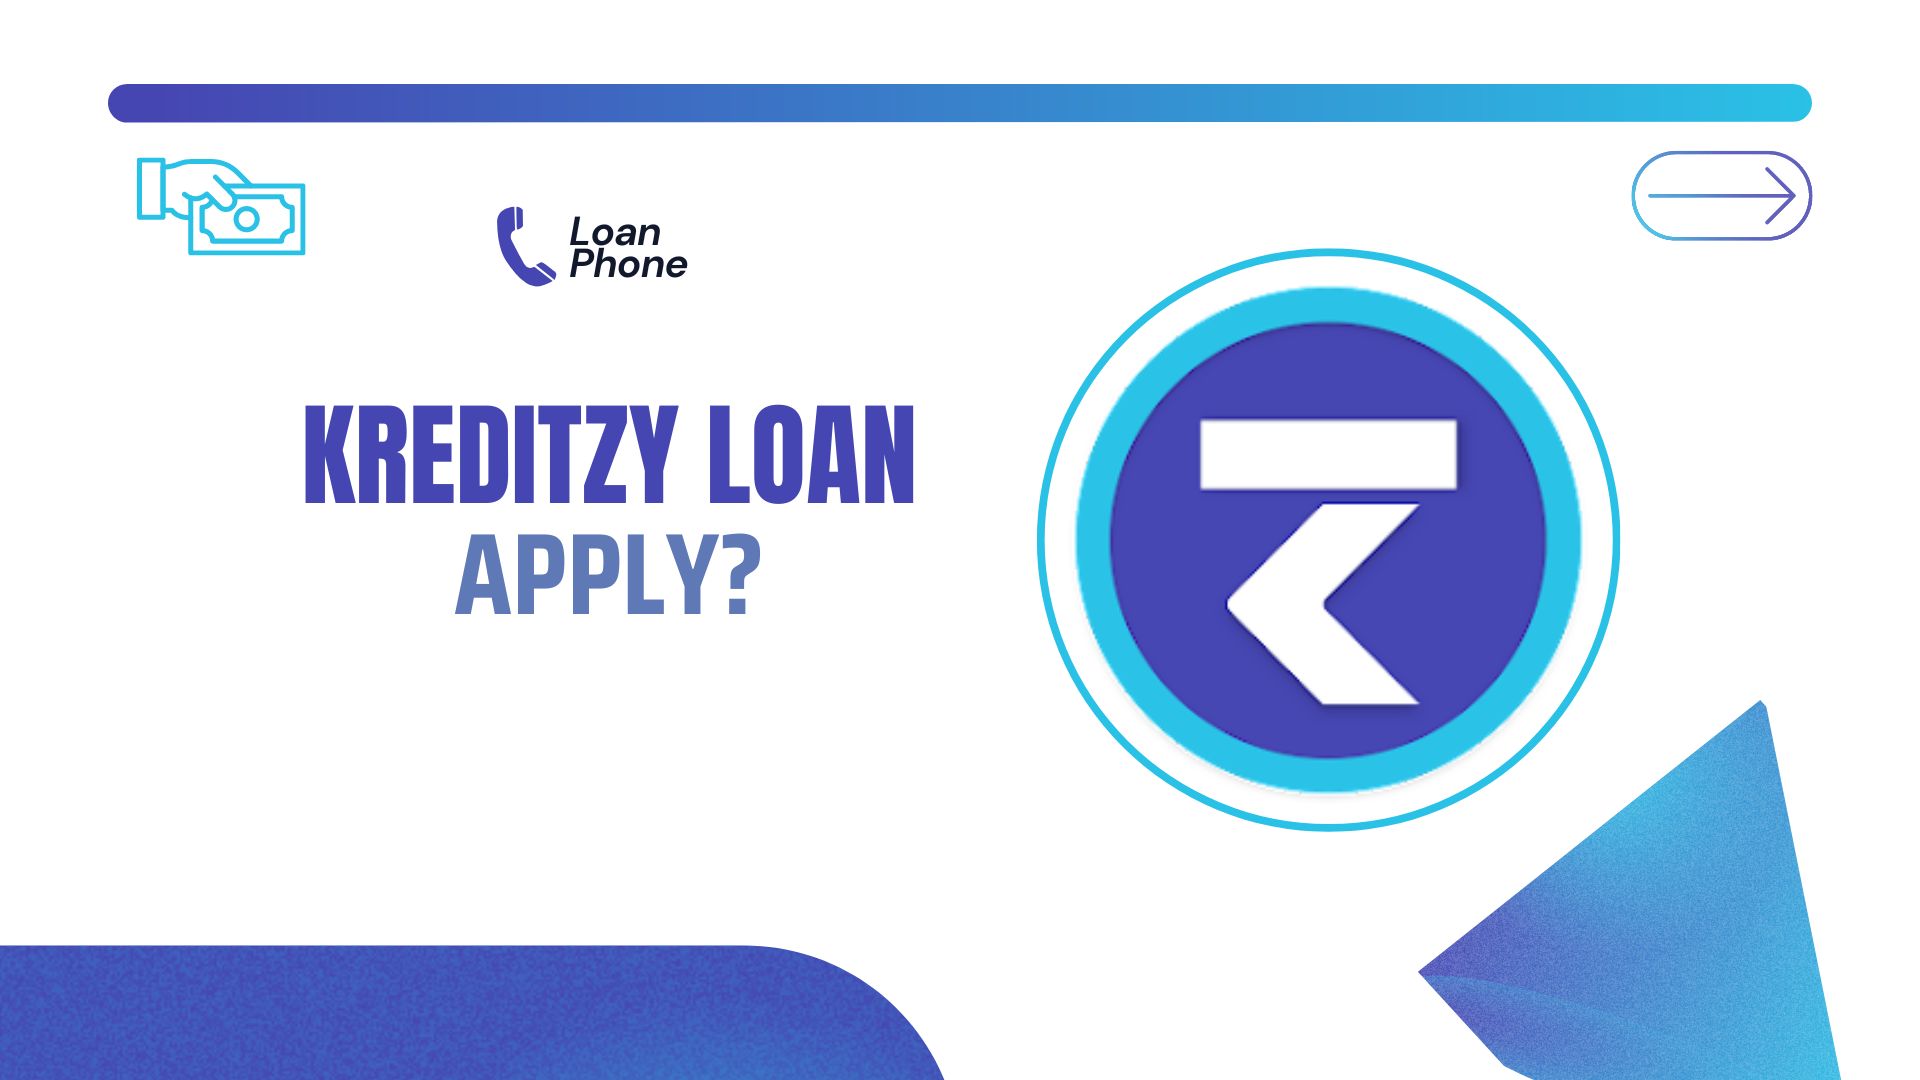 Kreditzy Loan App से लोन कैसे लें?